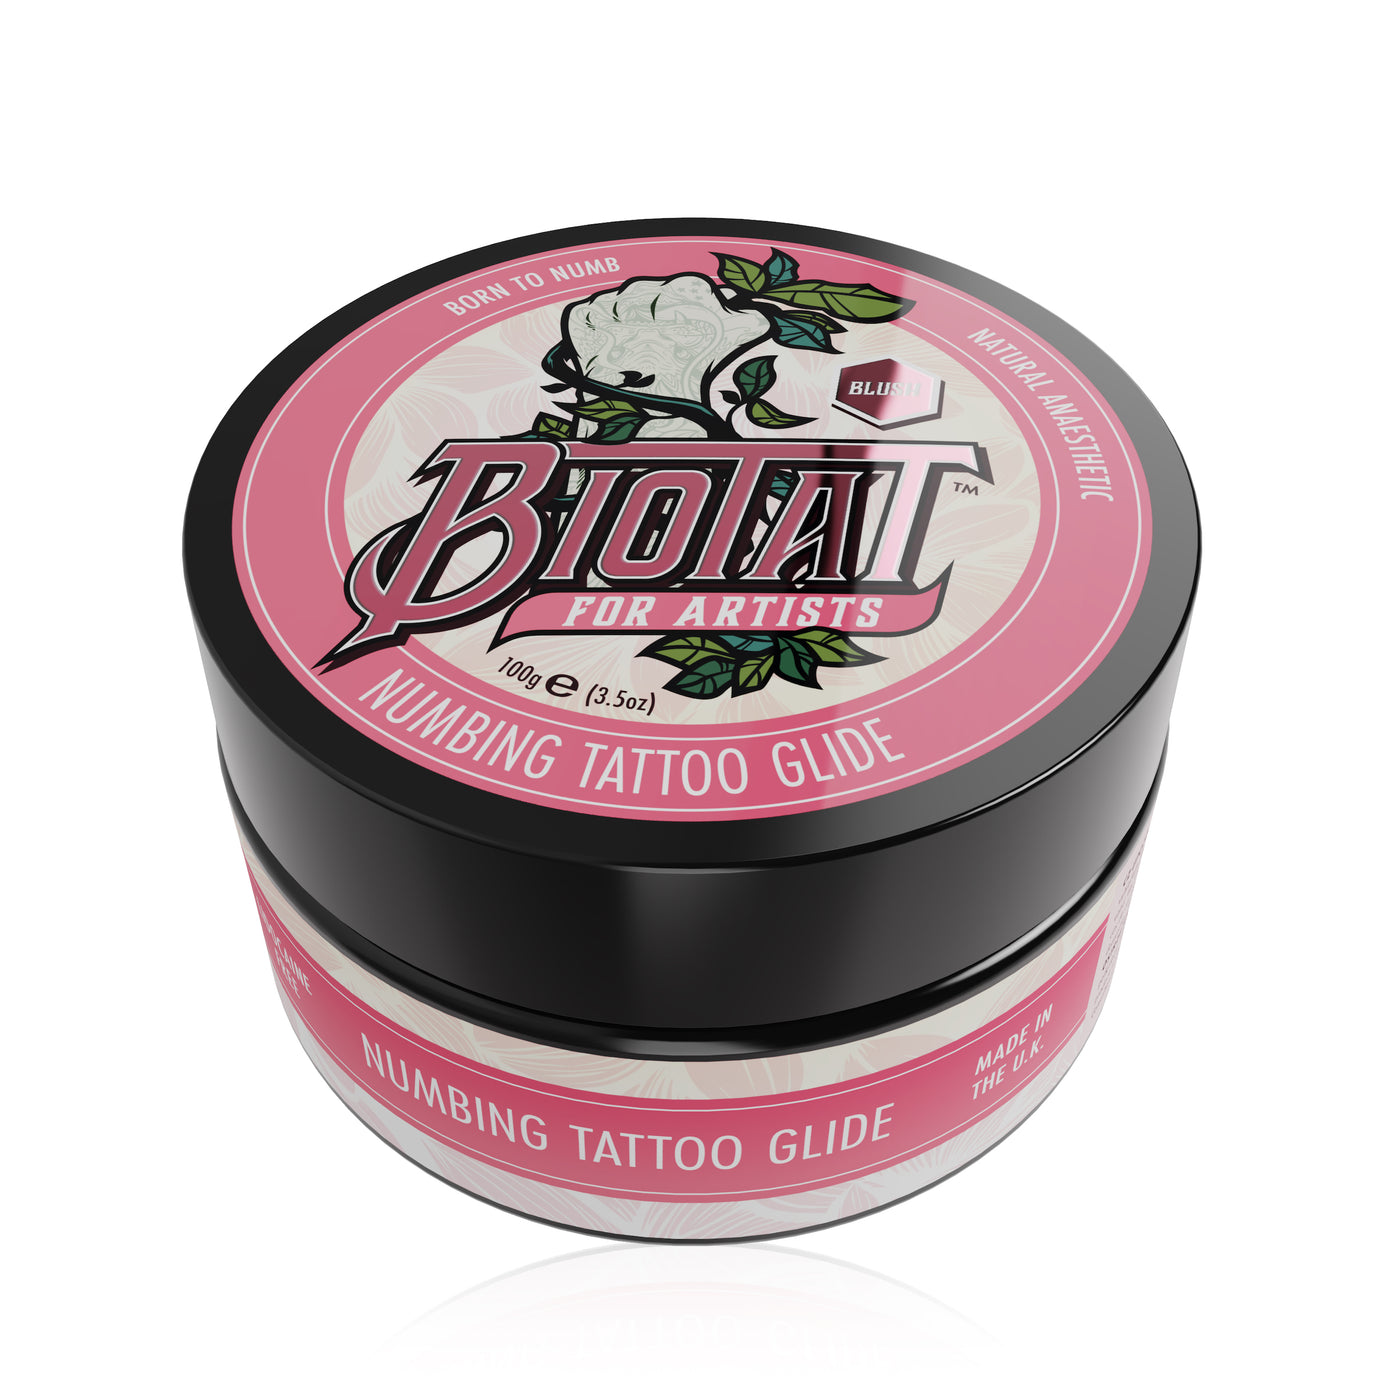 Biotat® Natural Numbing Tattoo Glide - Blush